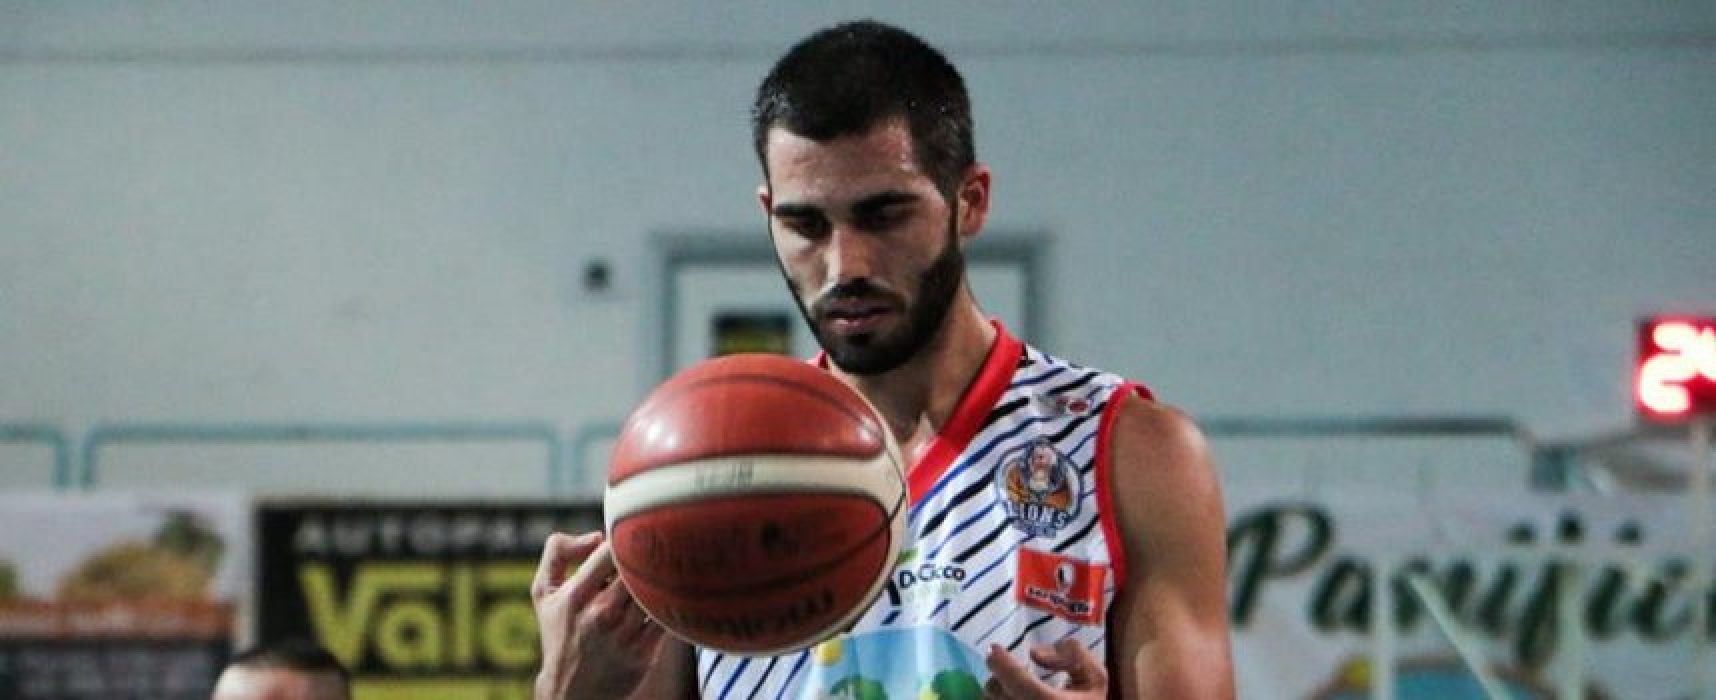 Basket, la Di Pinto Panifici ospita Ortona: serve la vittoria a tutti i costi